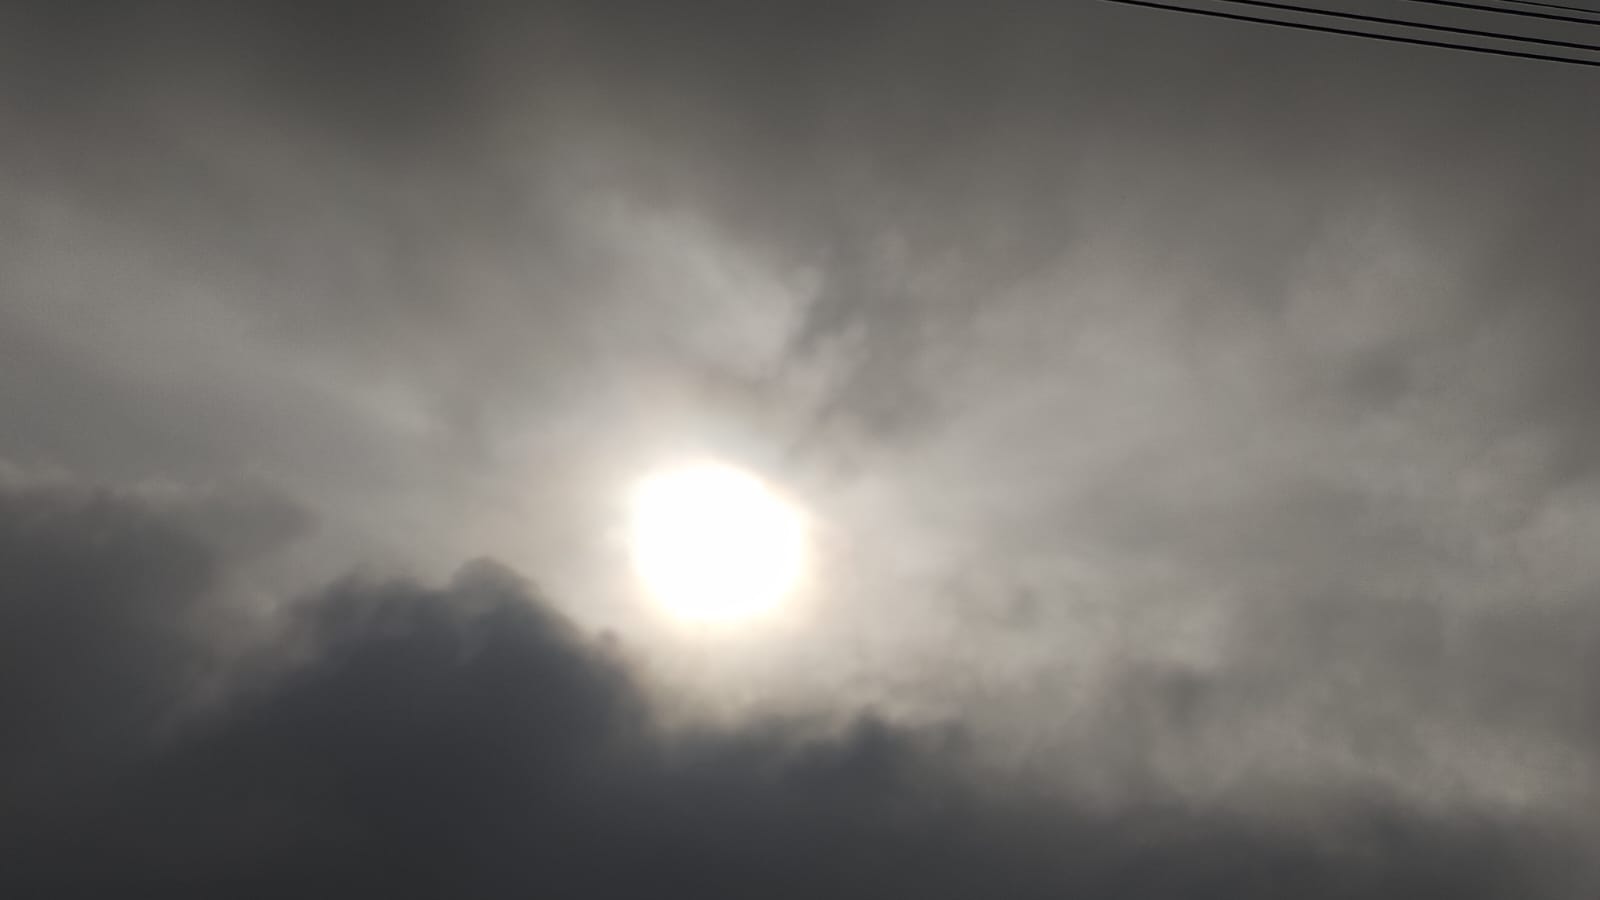 DAQUELE PREÇO: Sextou (26) de céu nublado e chuvas em RO, inclusive em S. Miguel do Guaporé